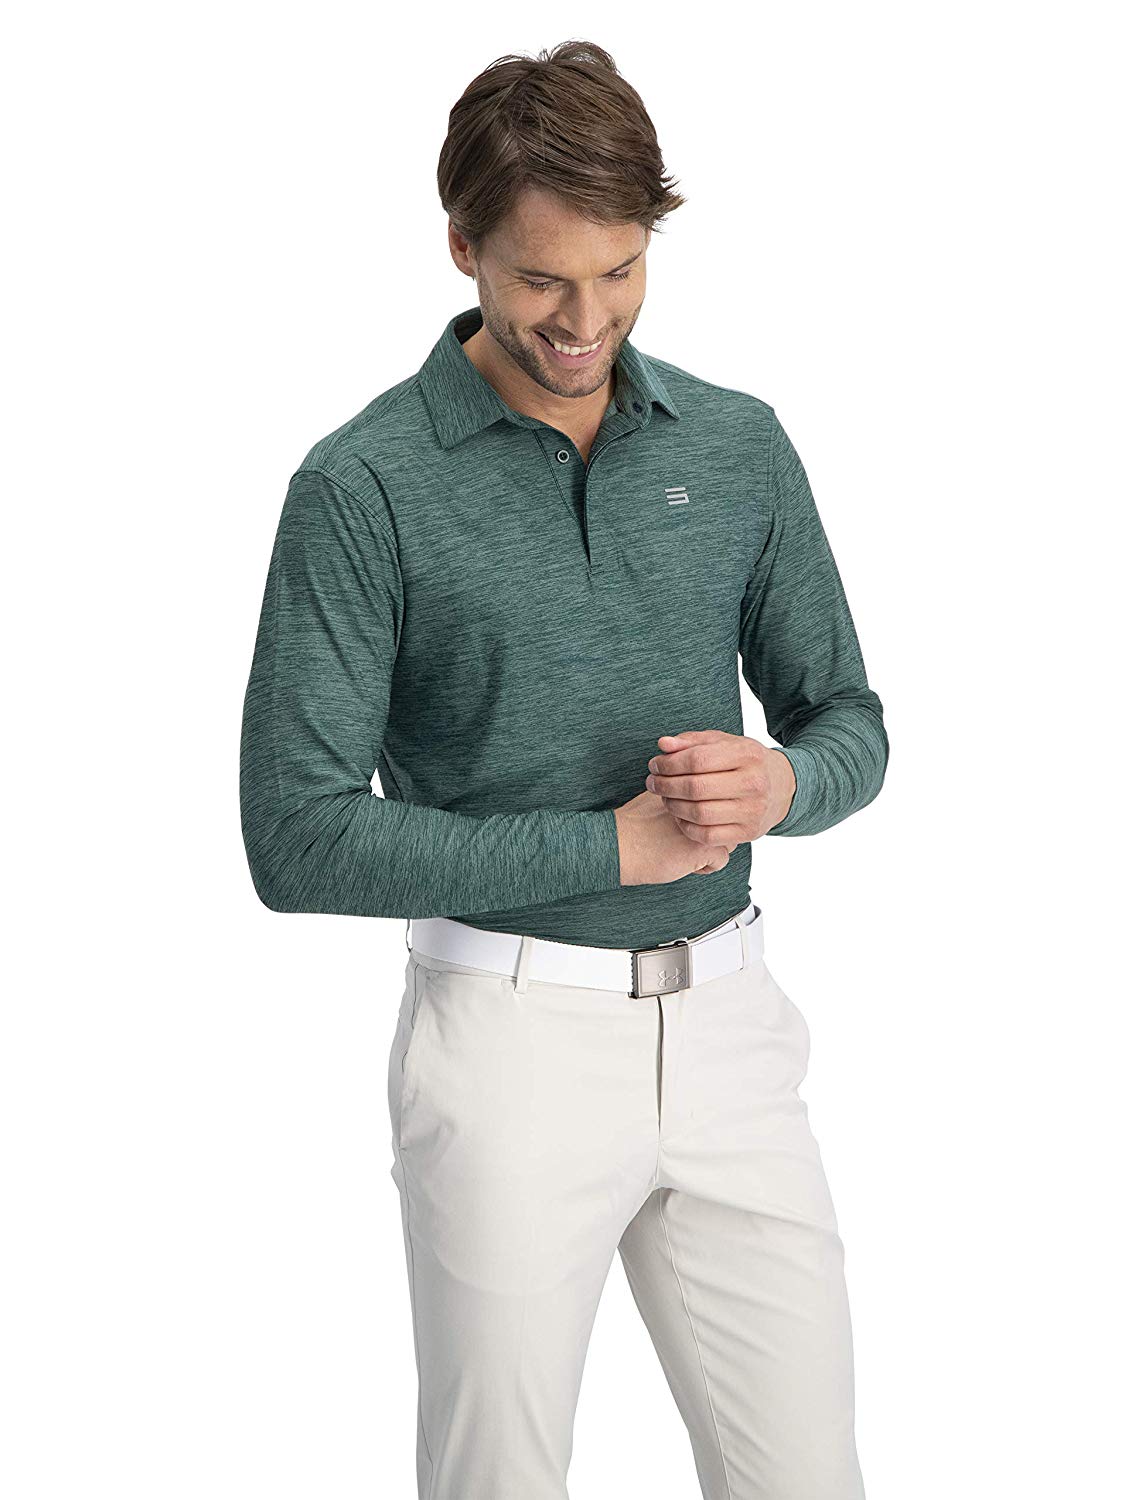 Best Golf Shirt Brands - Best Design Idea